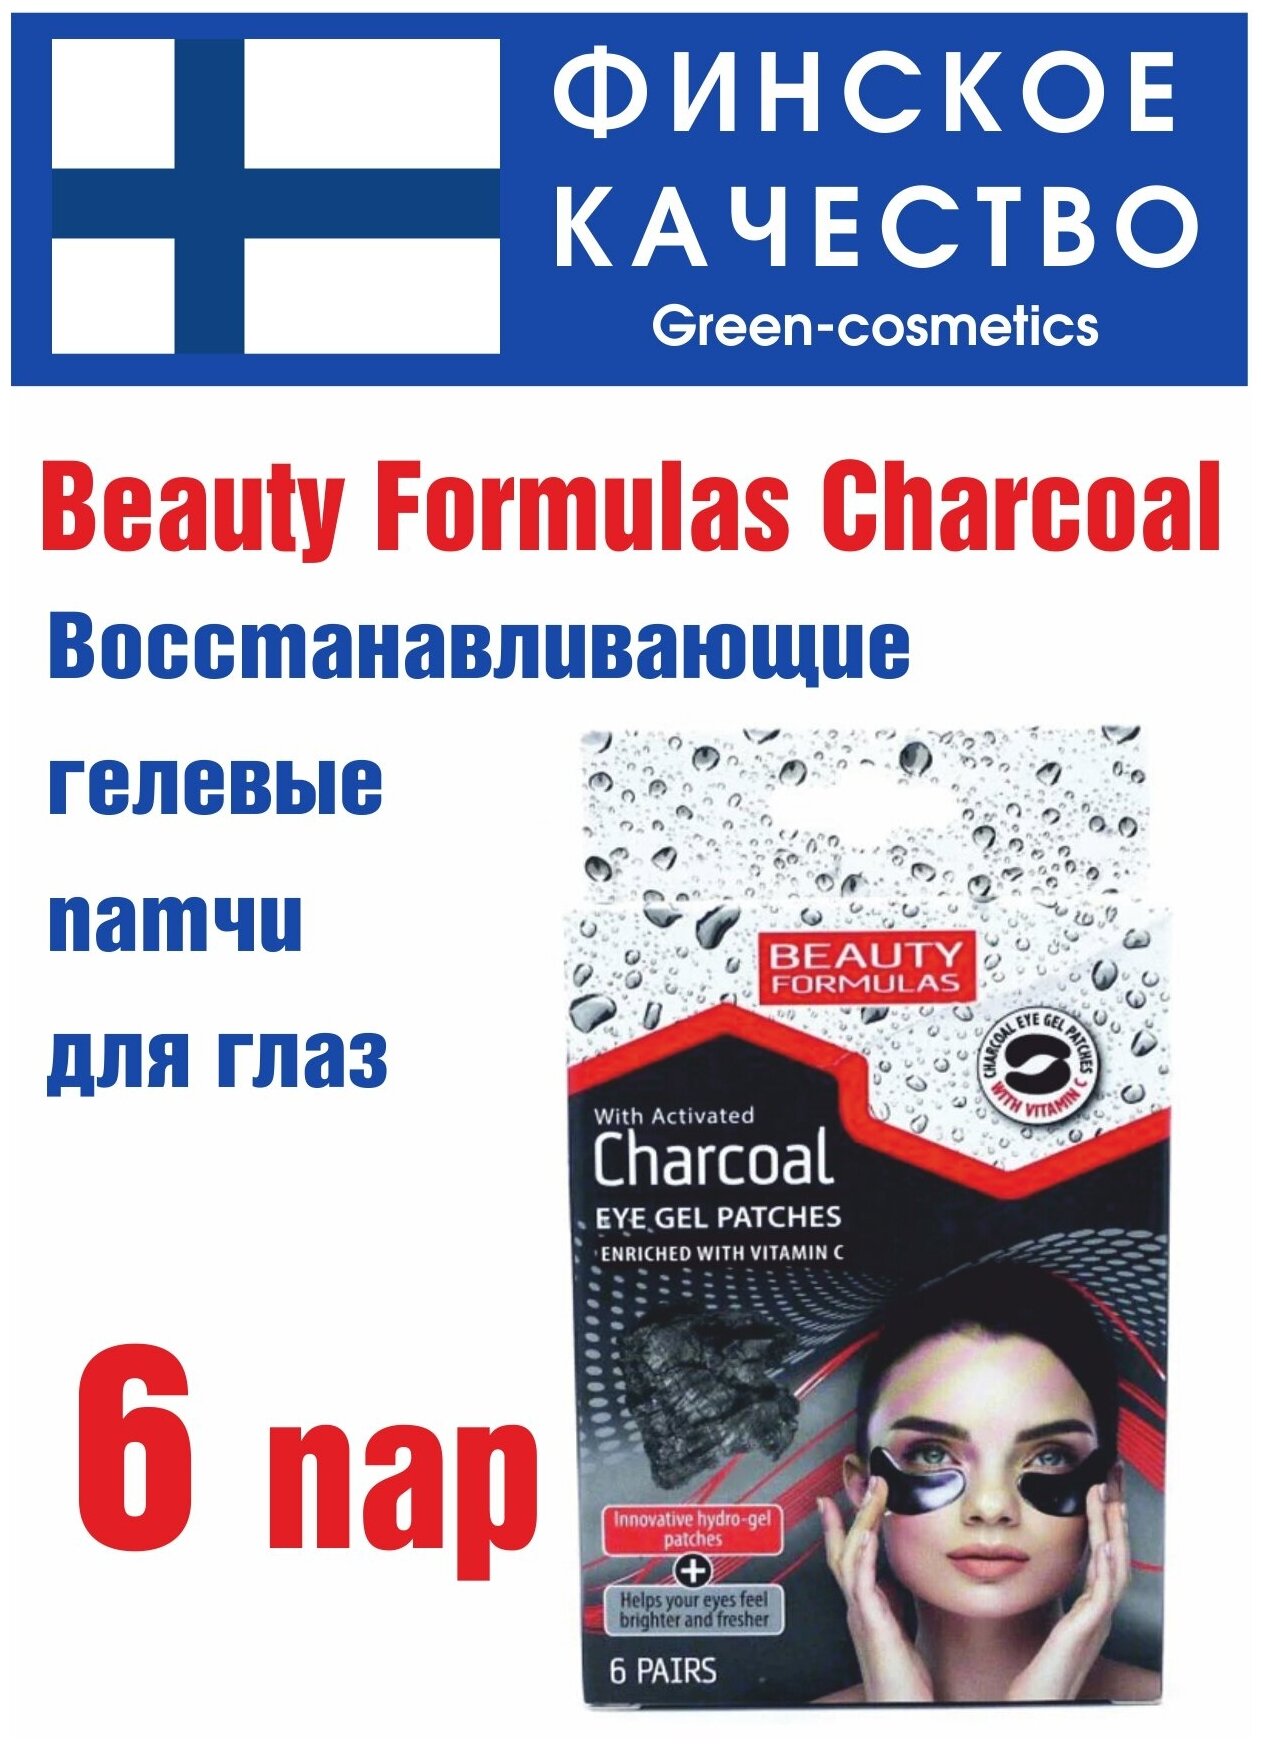 Beauty Formulas Charcoal Гелевые патчи для век (подушечки с активированным углем и витамином С) - 6 пар (12 шт)